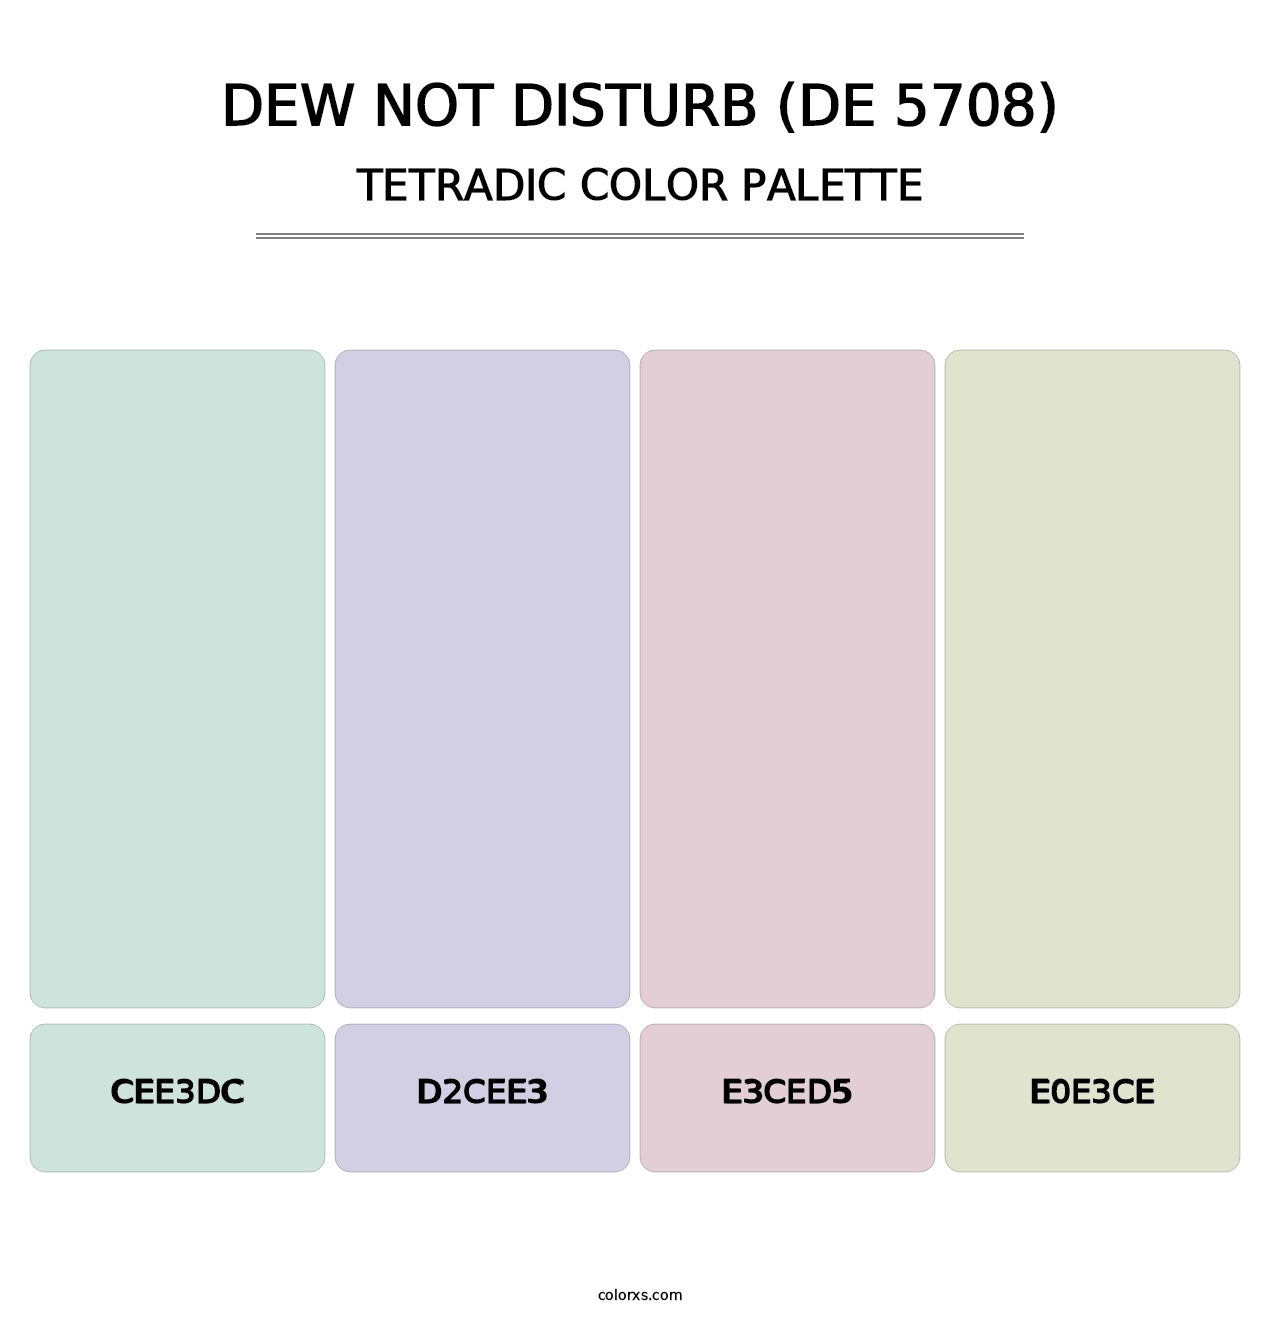 Dew Not Disturb (DE 5708) - Tetradic Color Palette